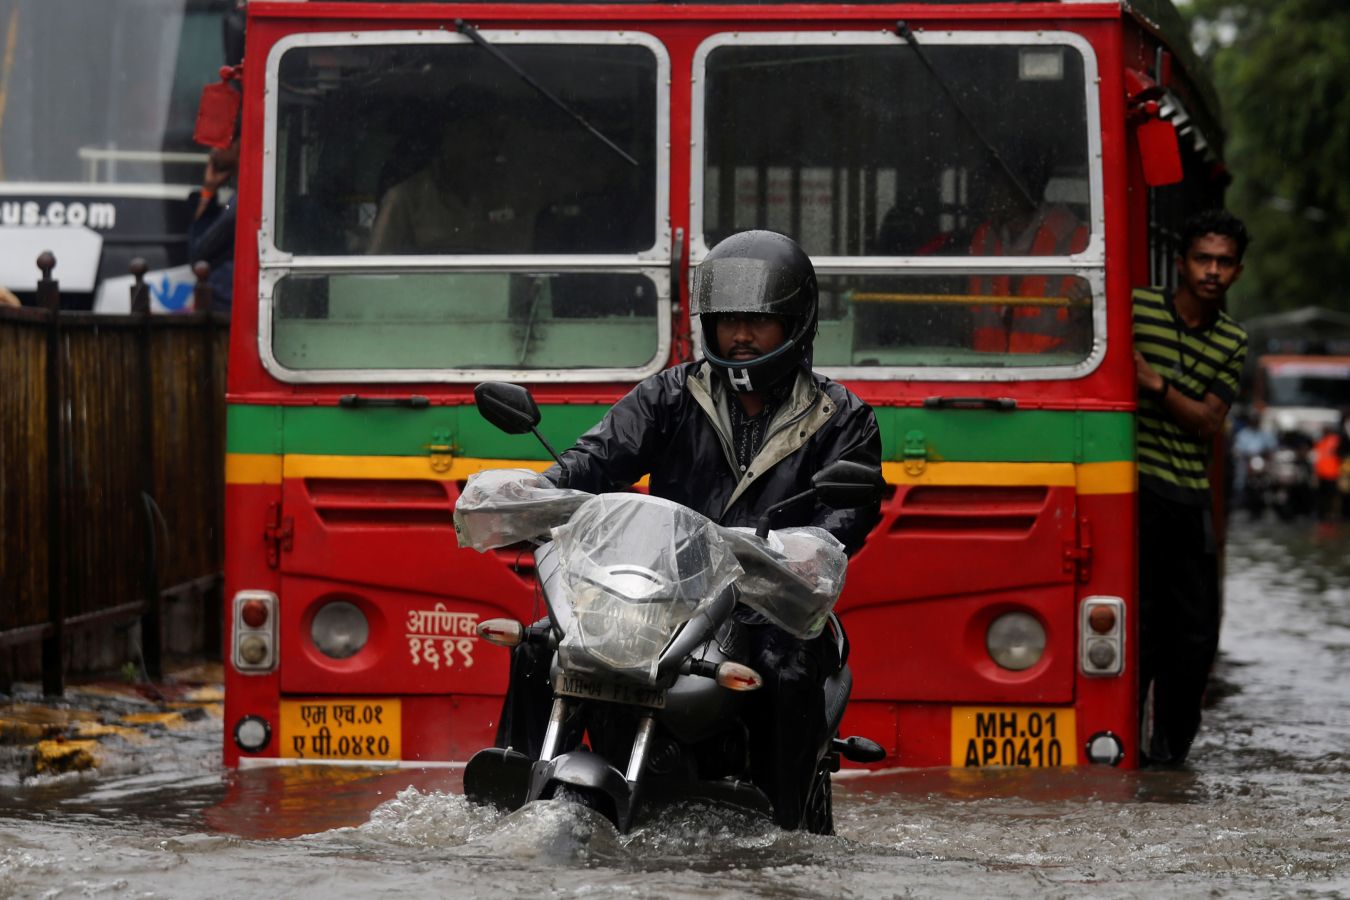 La India vive su época de monzón. En unos minutos, las calle de Bombay se inundaron como consecuencia de una fuerte tromba de agua